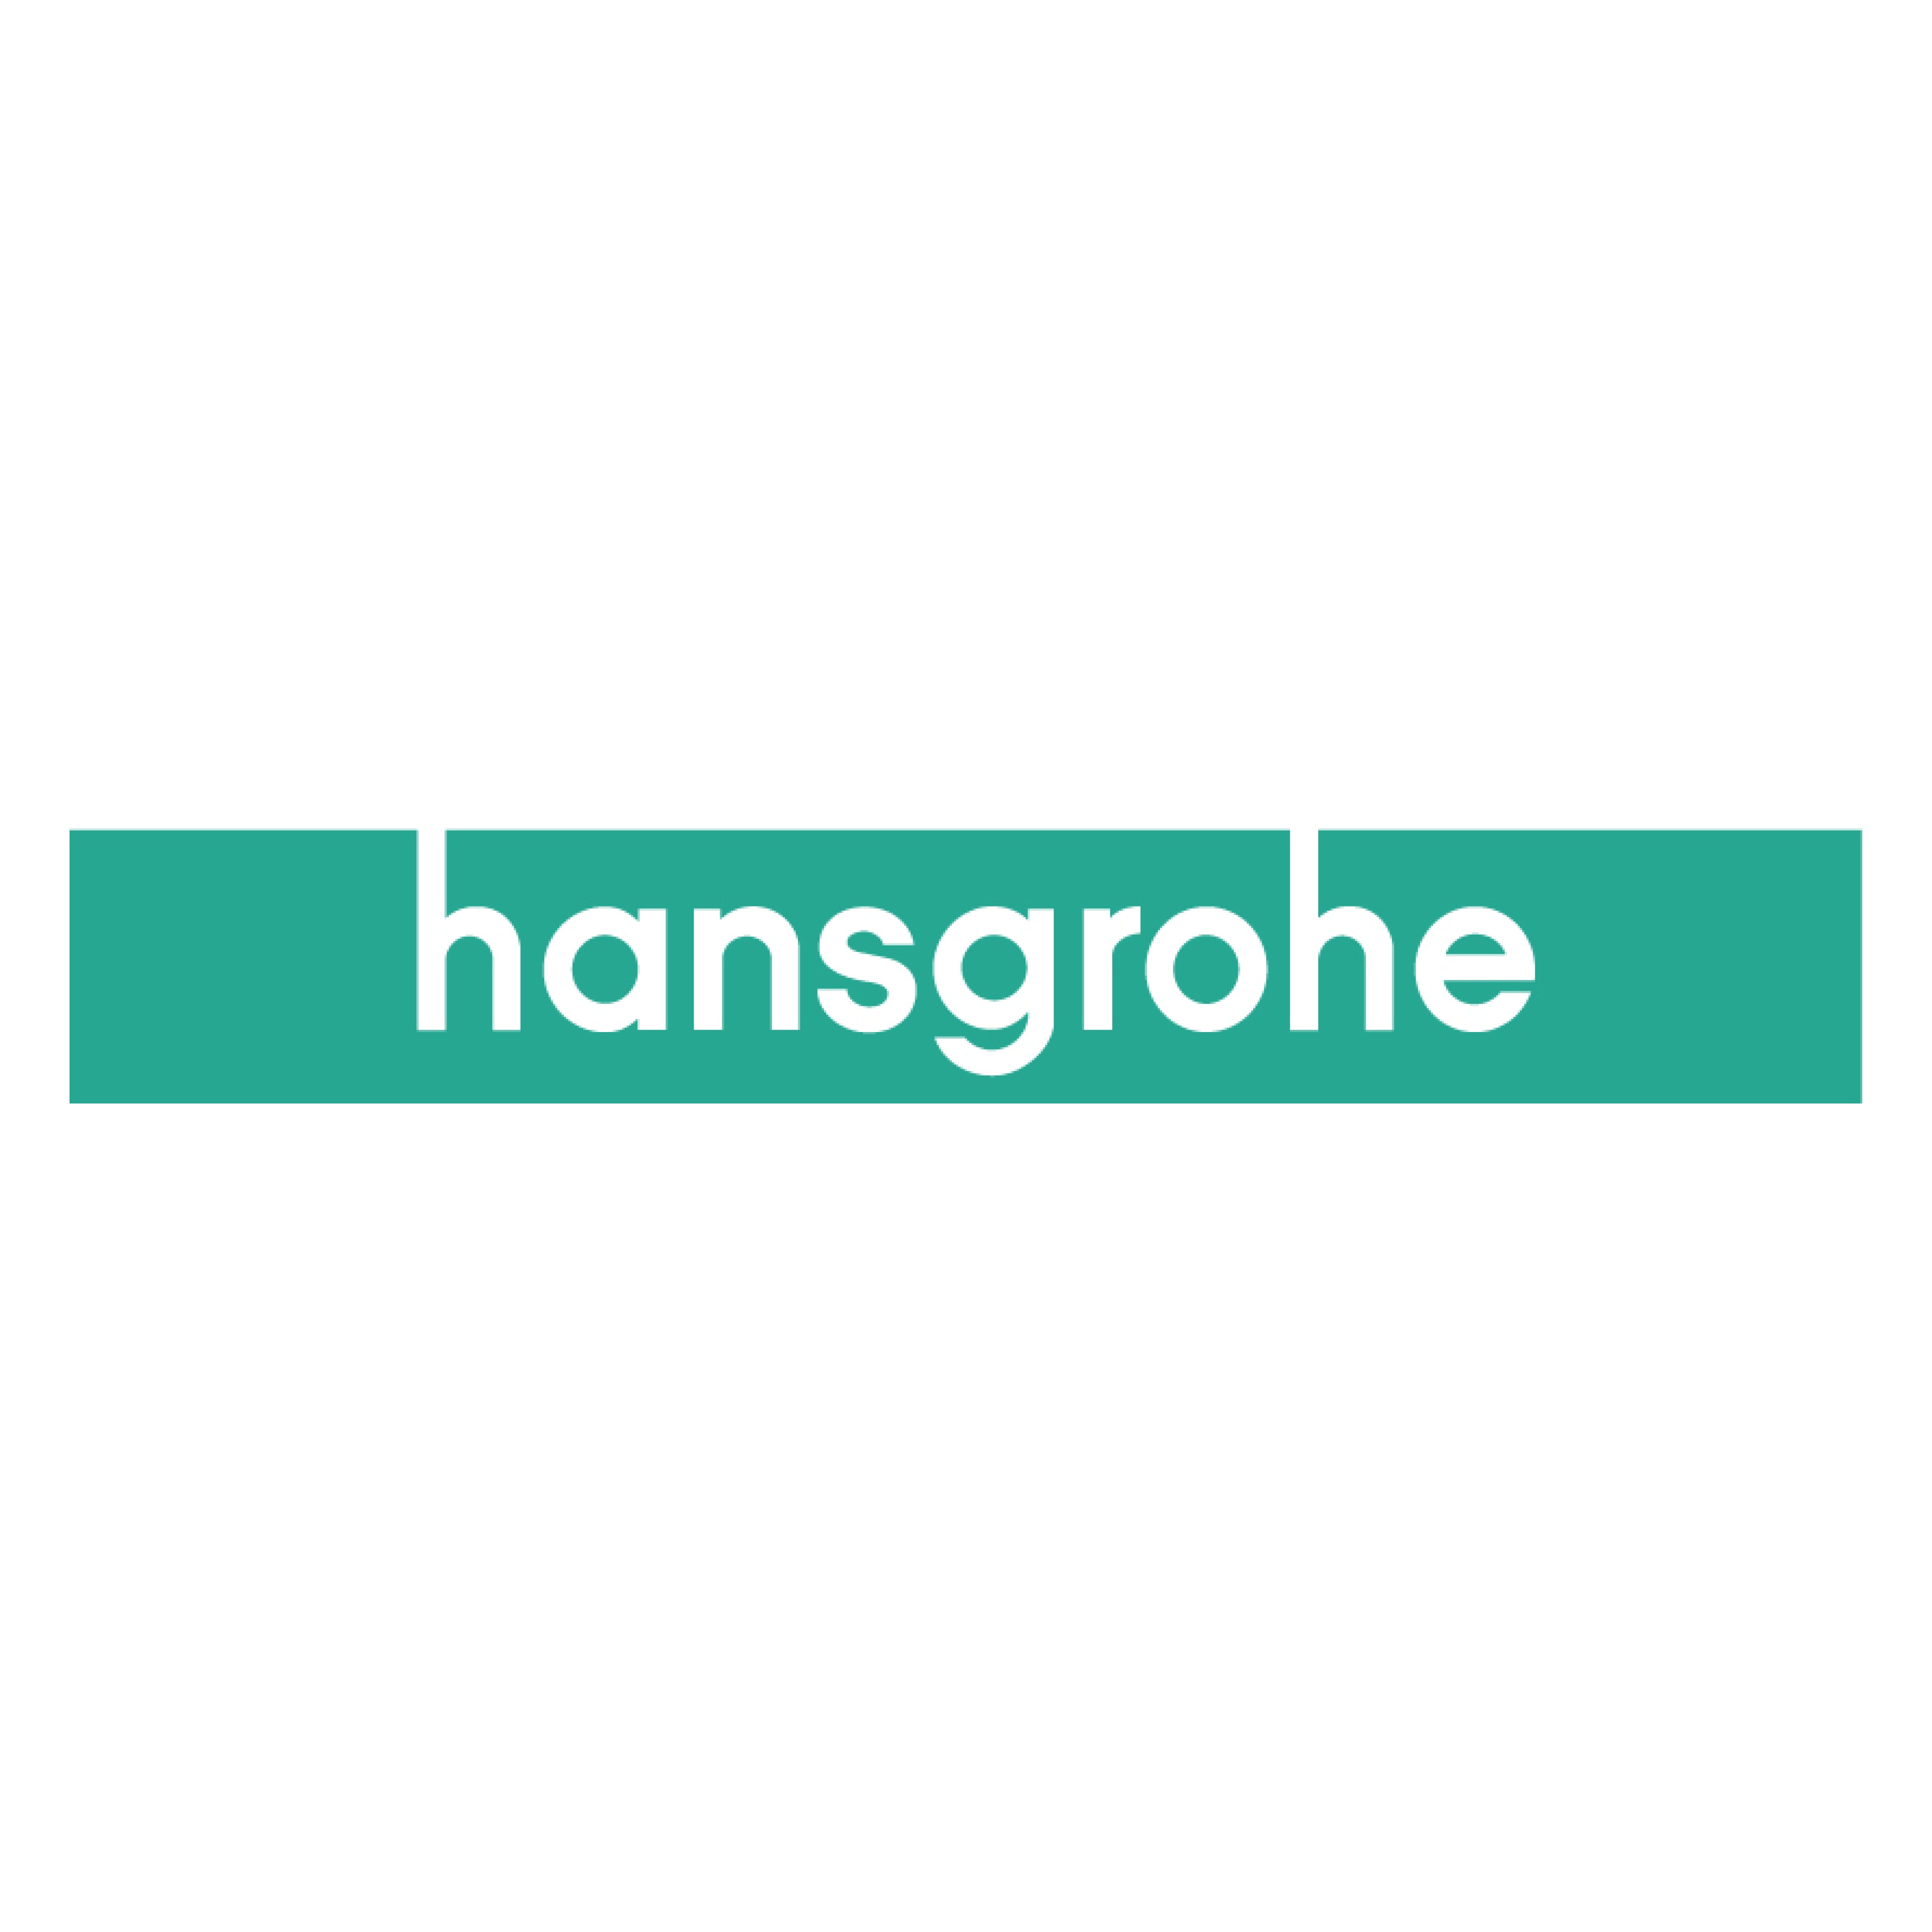 Hansgrohe Tapware